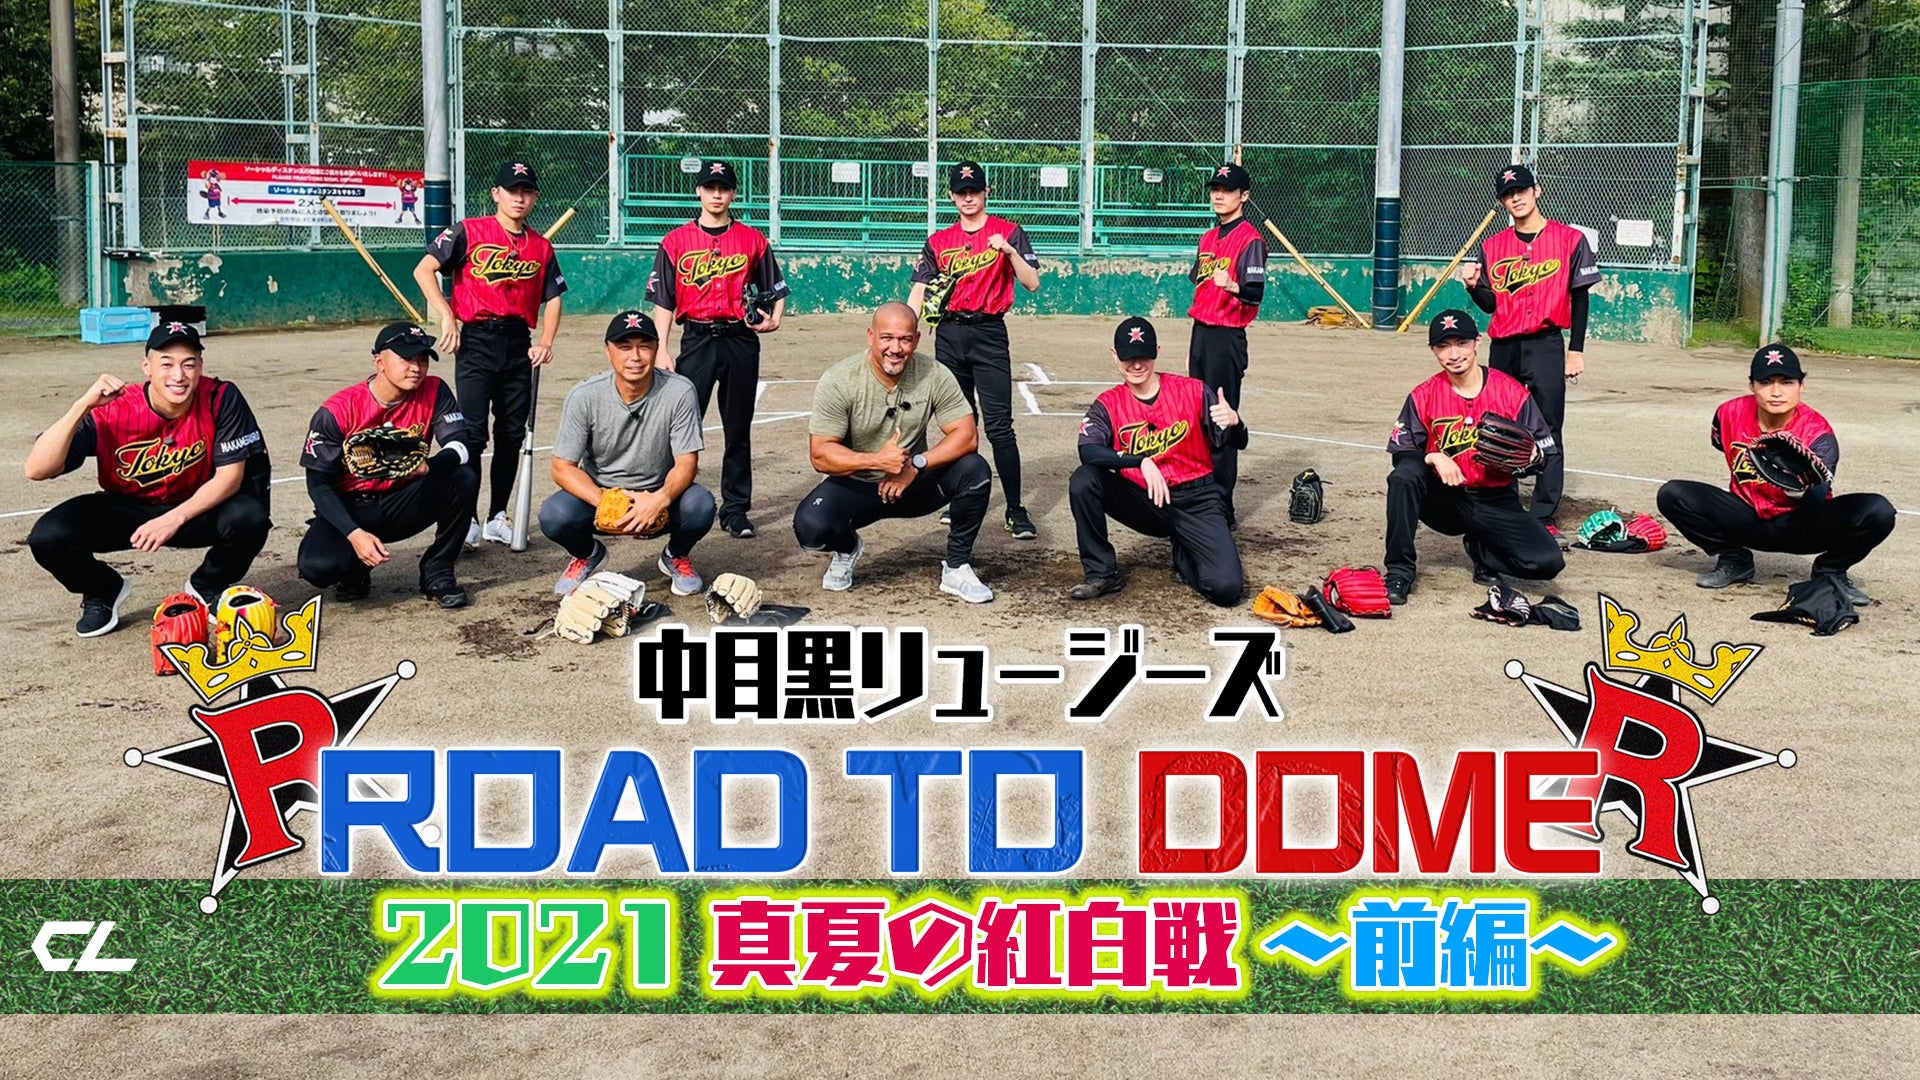 【中目黒リュージーズ】ROAD TO DOME!! 〜2021真夏の紅白戦・前編〜 2021/9/11(土)